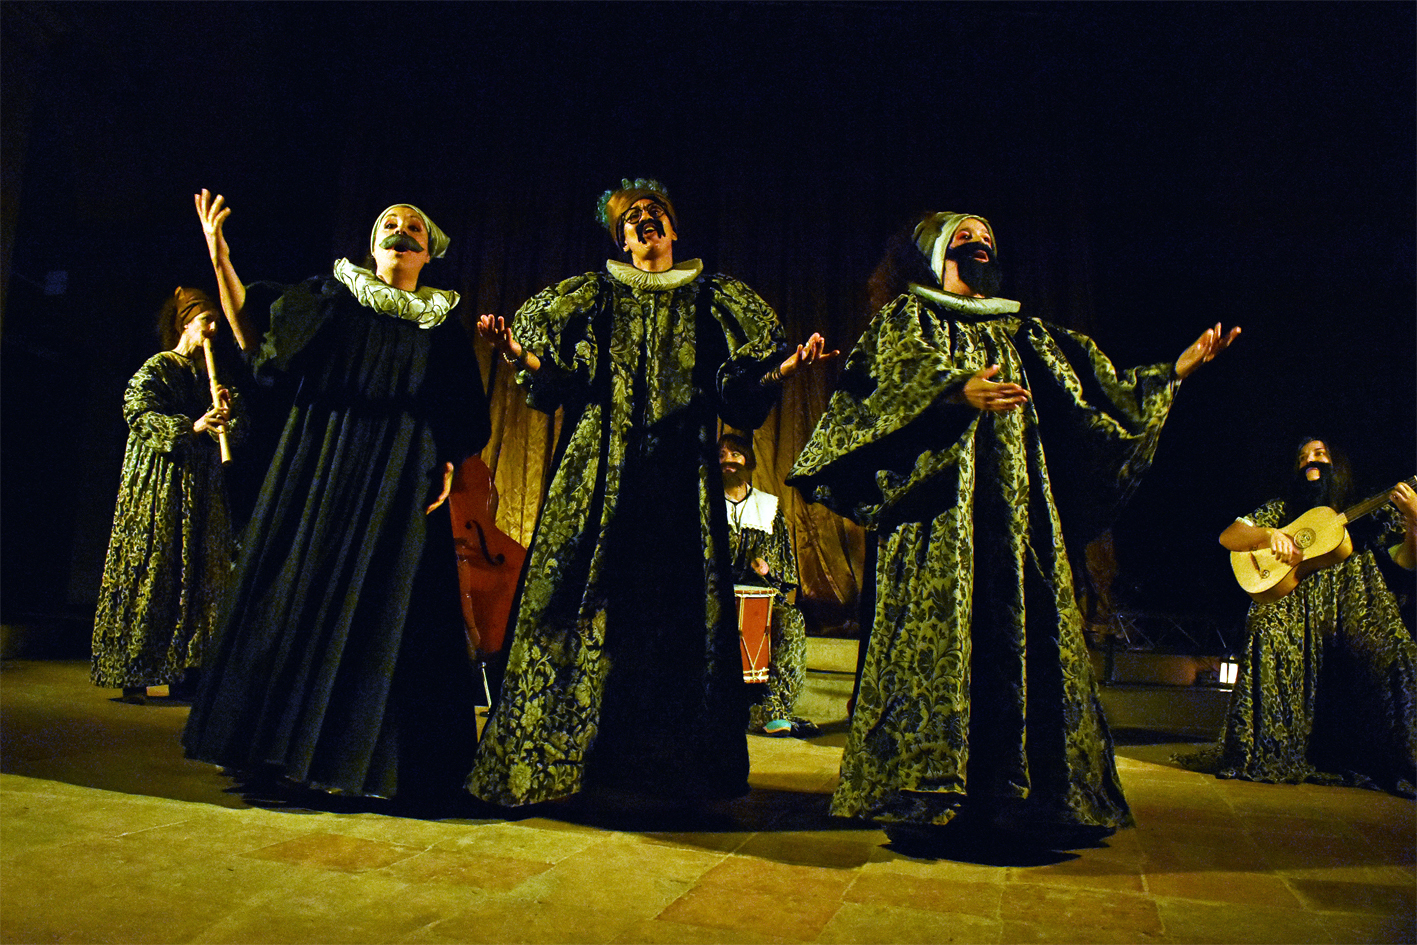 Espectacle 'Plebeyos bailes' d'Èlia Casanova i La Tendresa, dins del 6è Festival Espurnes Barroques, a l'Església del Roser.